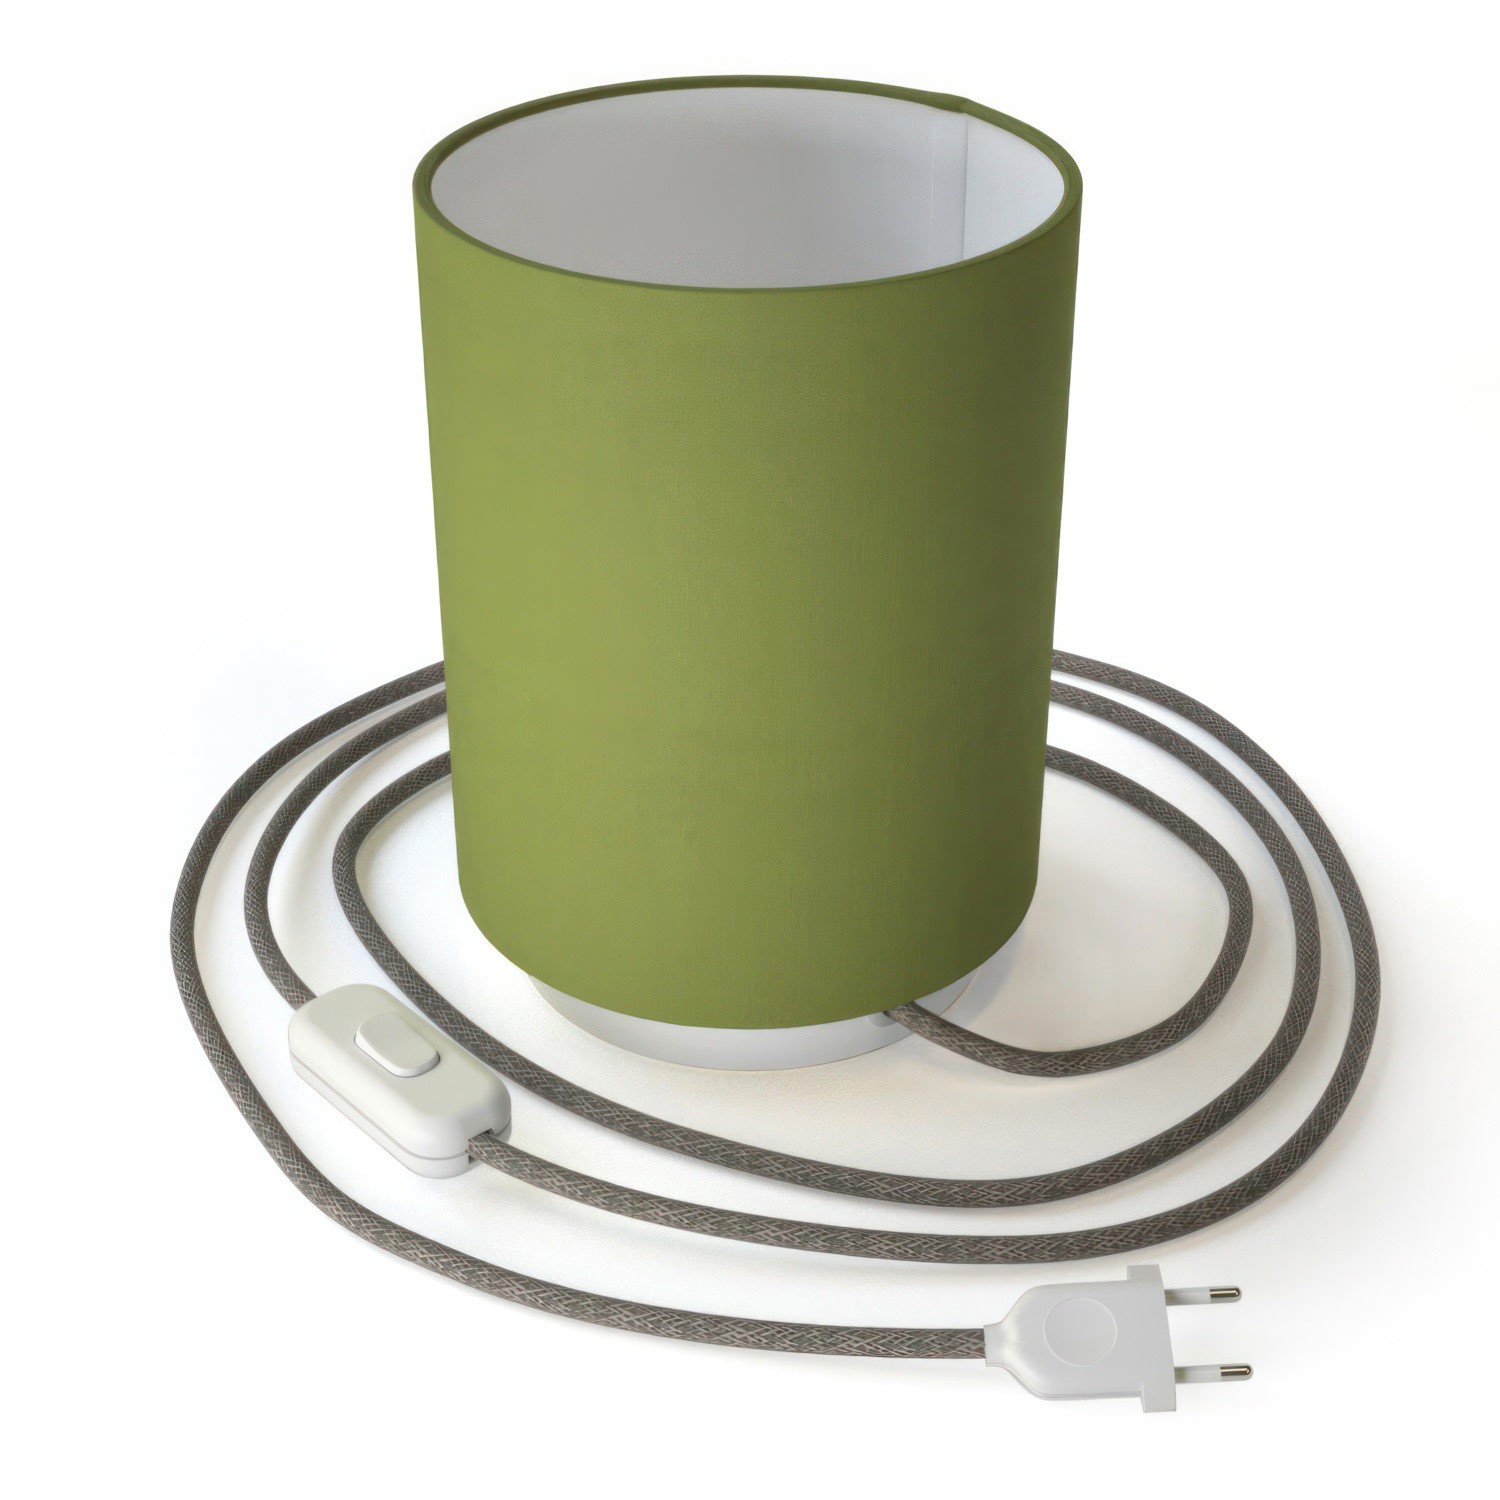 Posaluce de metal con pantalla de cilindro Verde Oliva, con cable textil, interruptor y enchufe de 2 polos